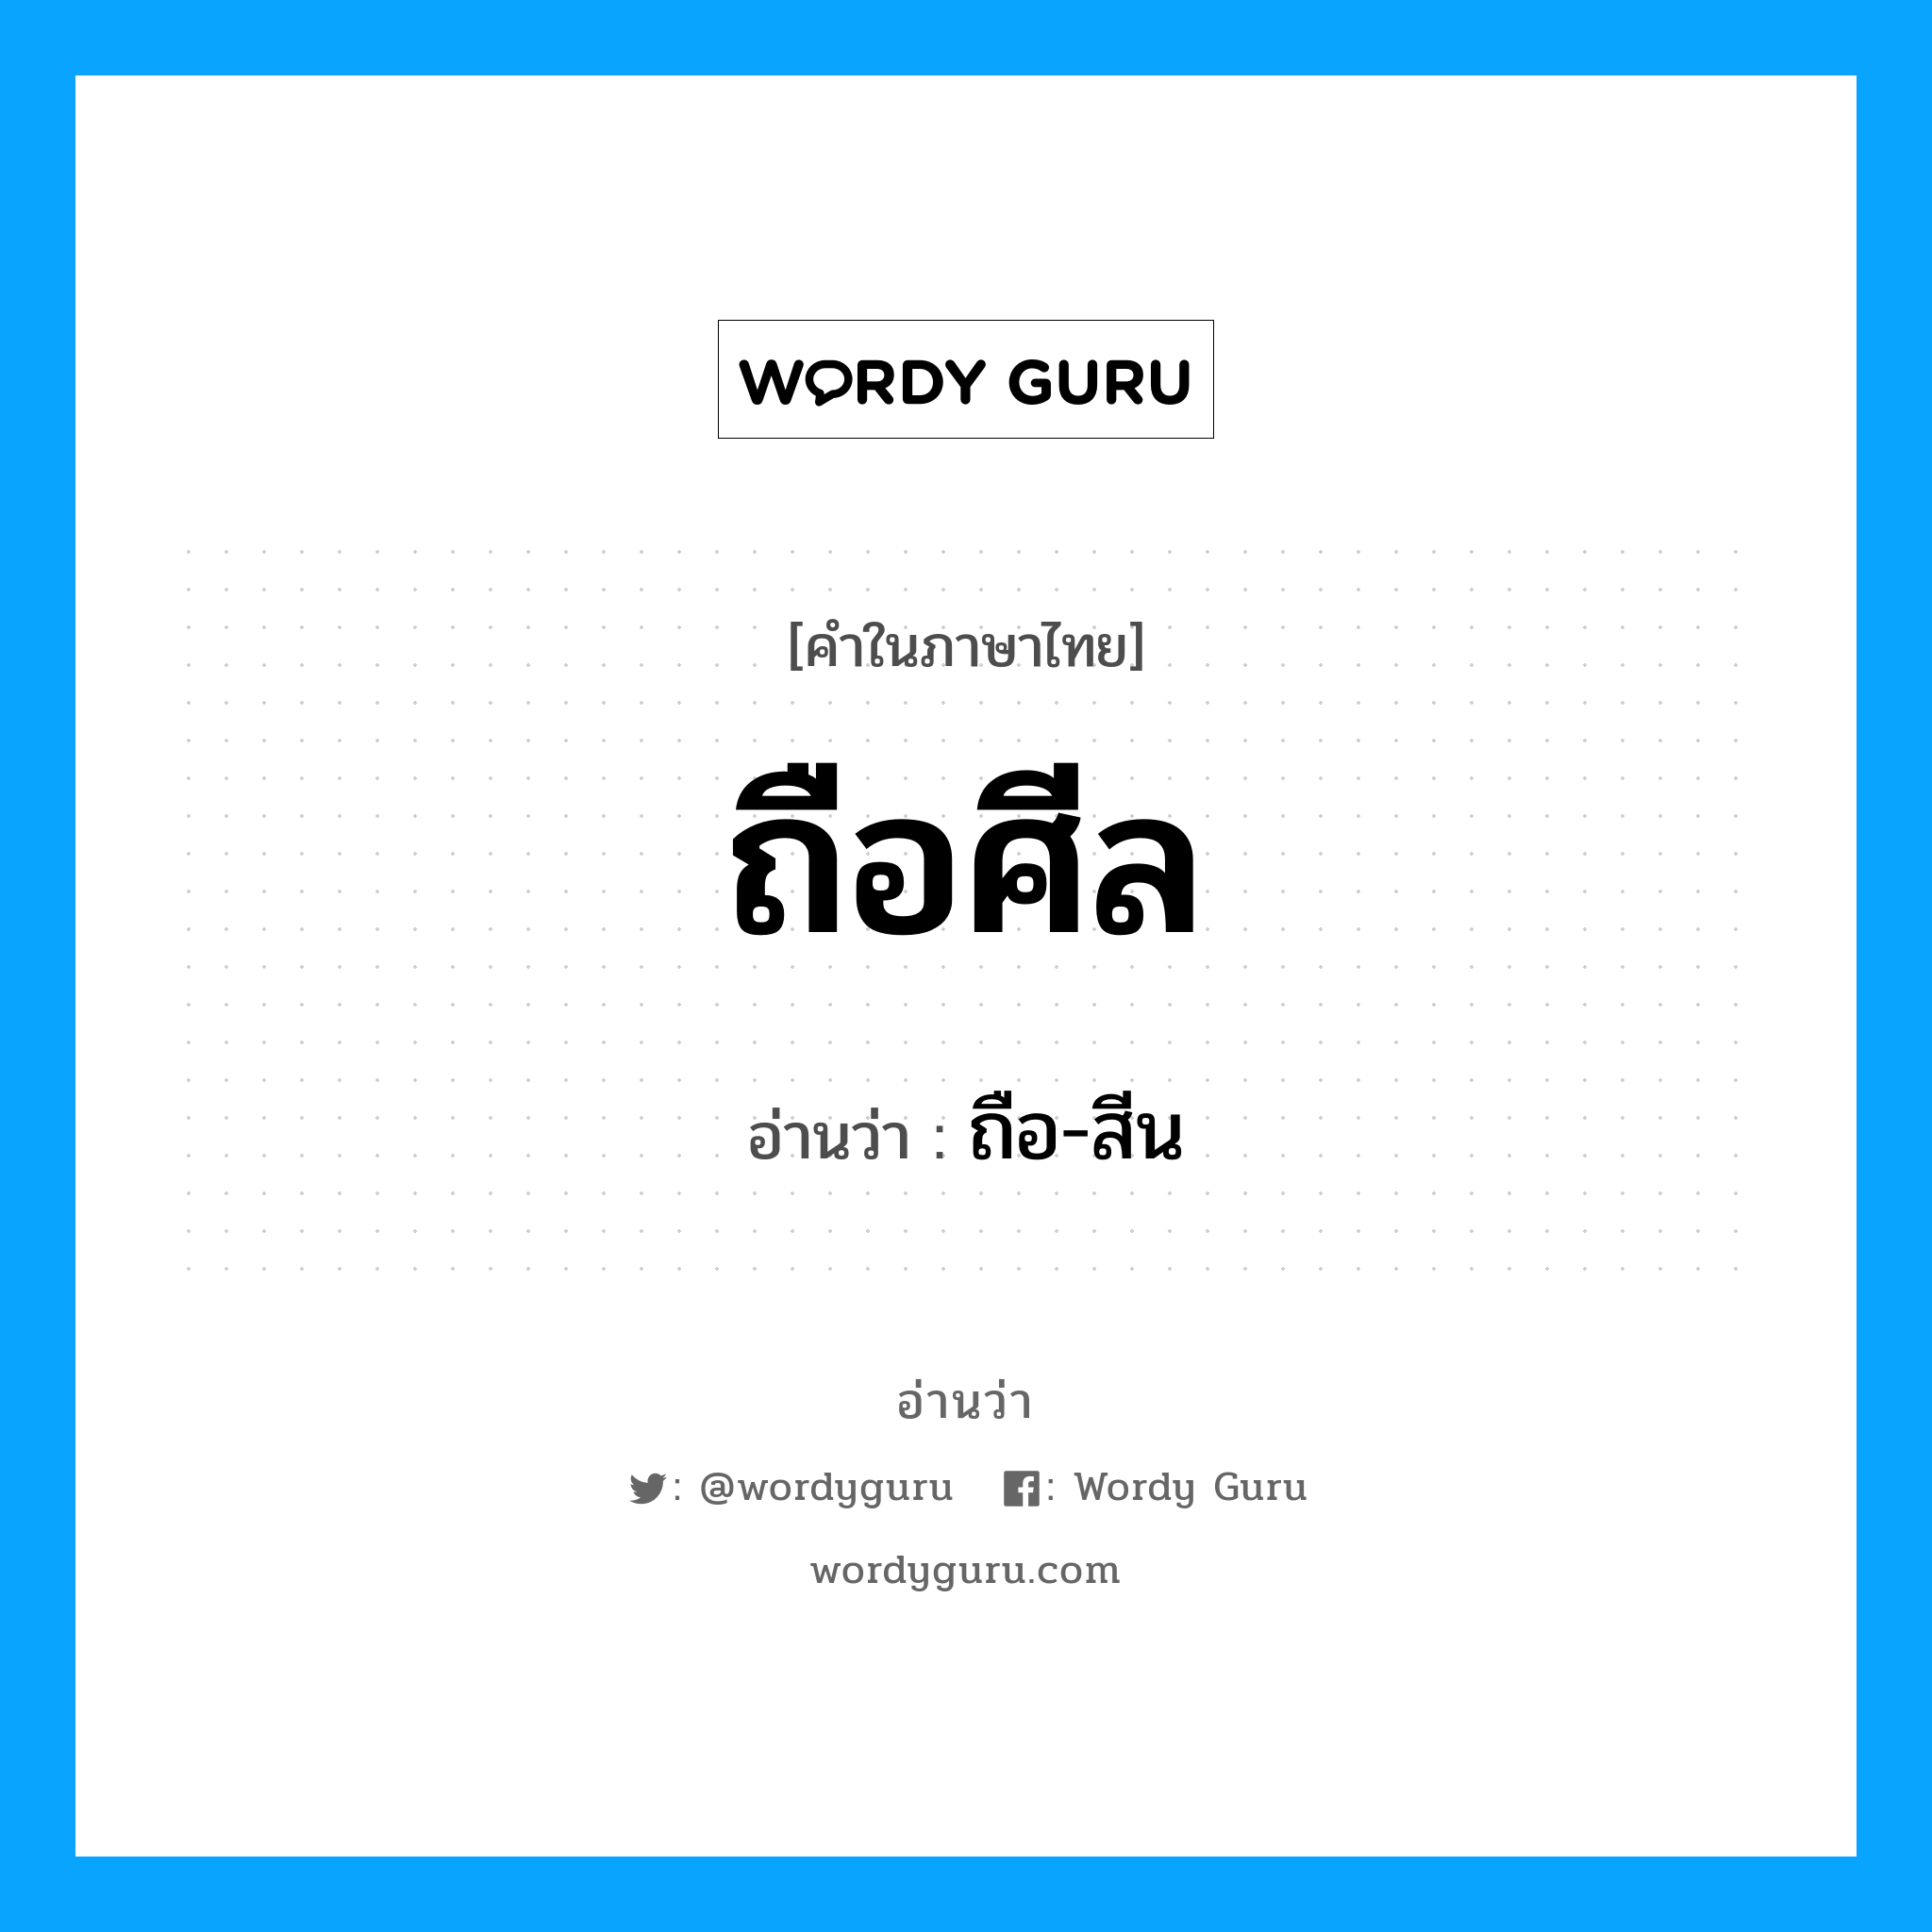 ถือ-สีน เป็นคำอ่านของคำไหน?, คำในภาษาไทย ถือ-สีน อ่านว่า ถือศีล